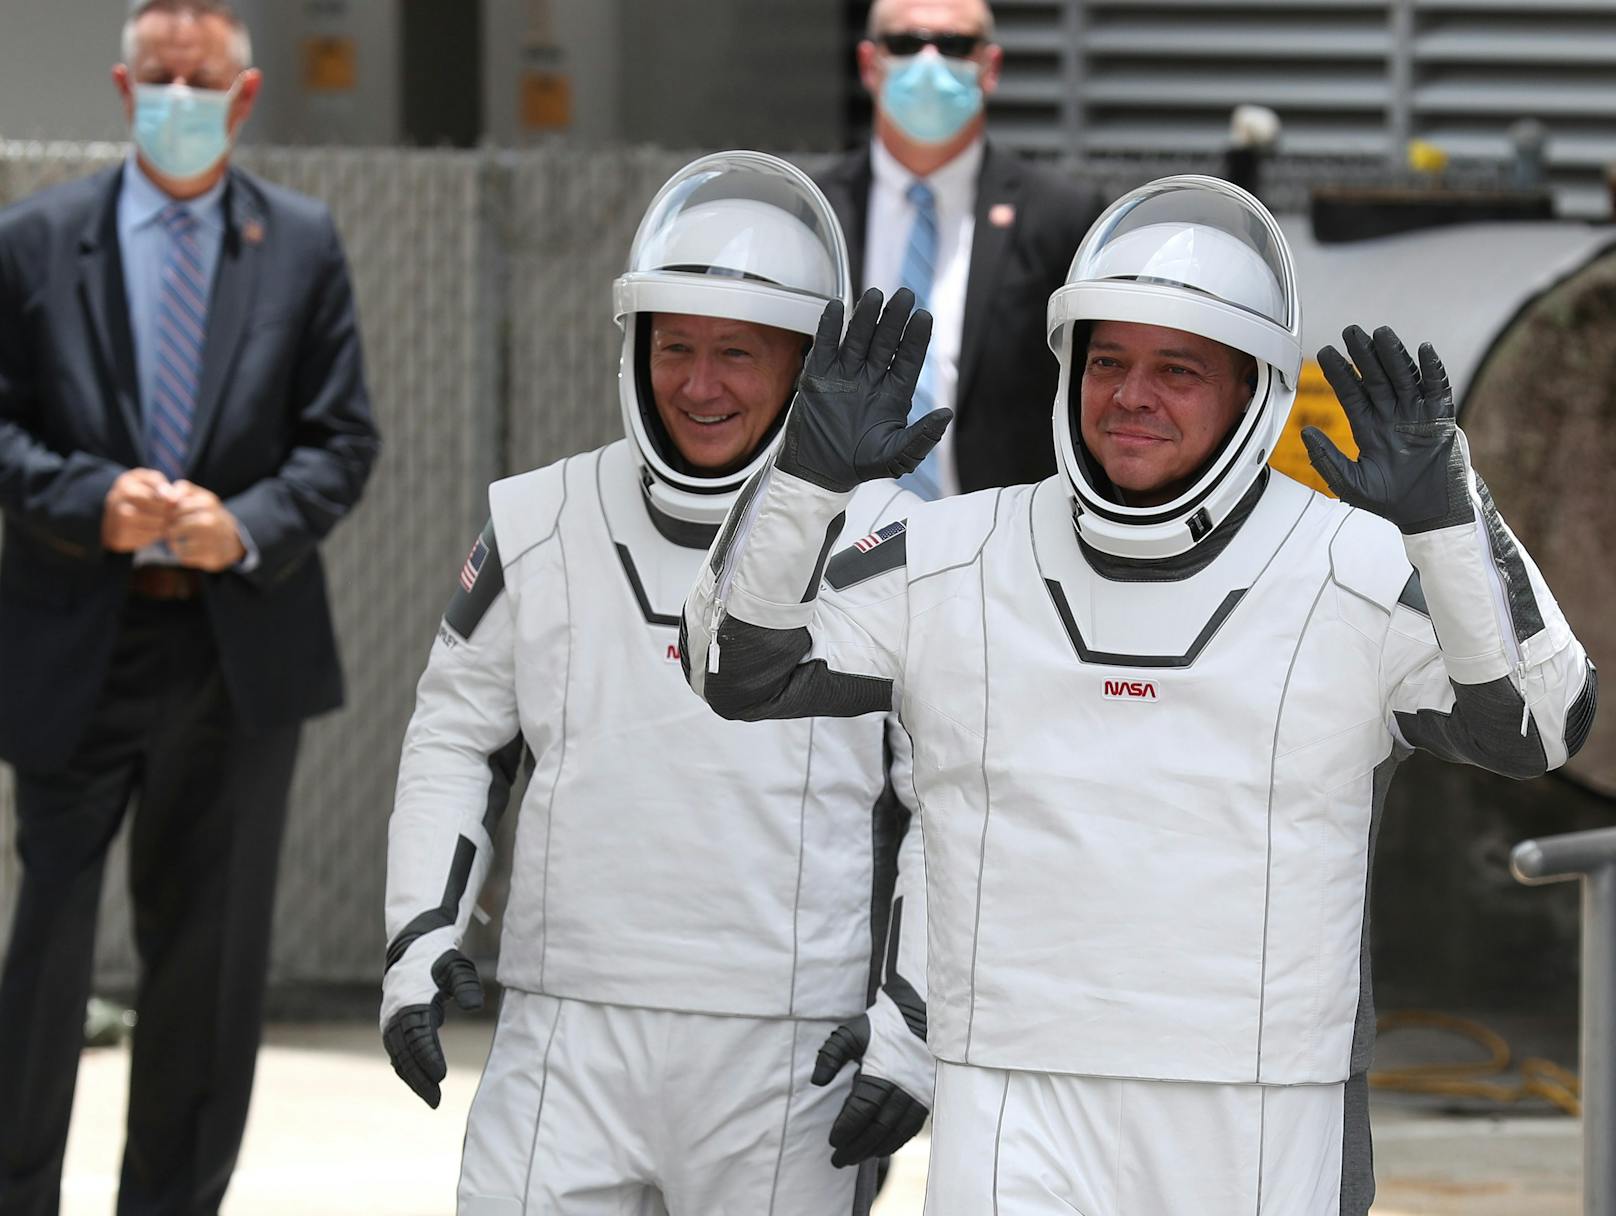 Auch die Raumanzüge aus Teflon unterscheiden sich um einiges von denjenigen der NASA. SpaceX-Chef Musk soll sie von einem Kostümdesigner aus Hollywood entwerfen und von seinen Ingenieuren fertigen gelassen haben.